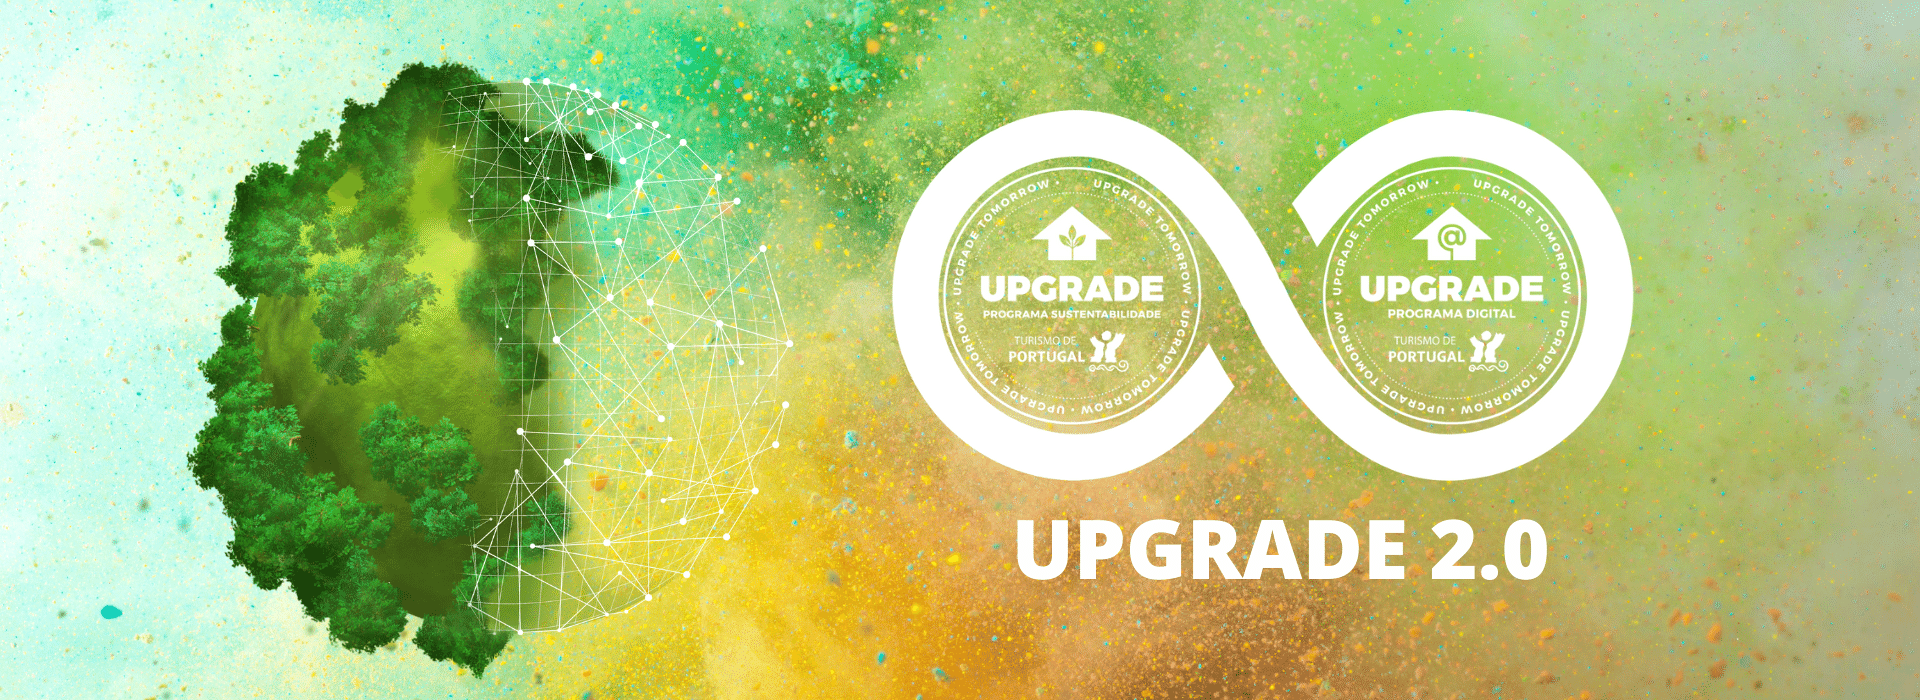 UPGRADE 2.0 | Percursos formativos